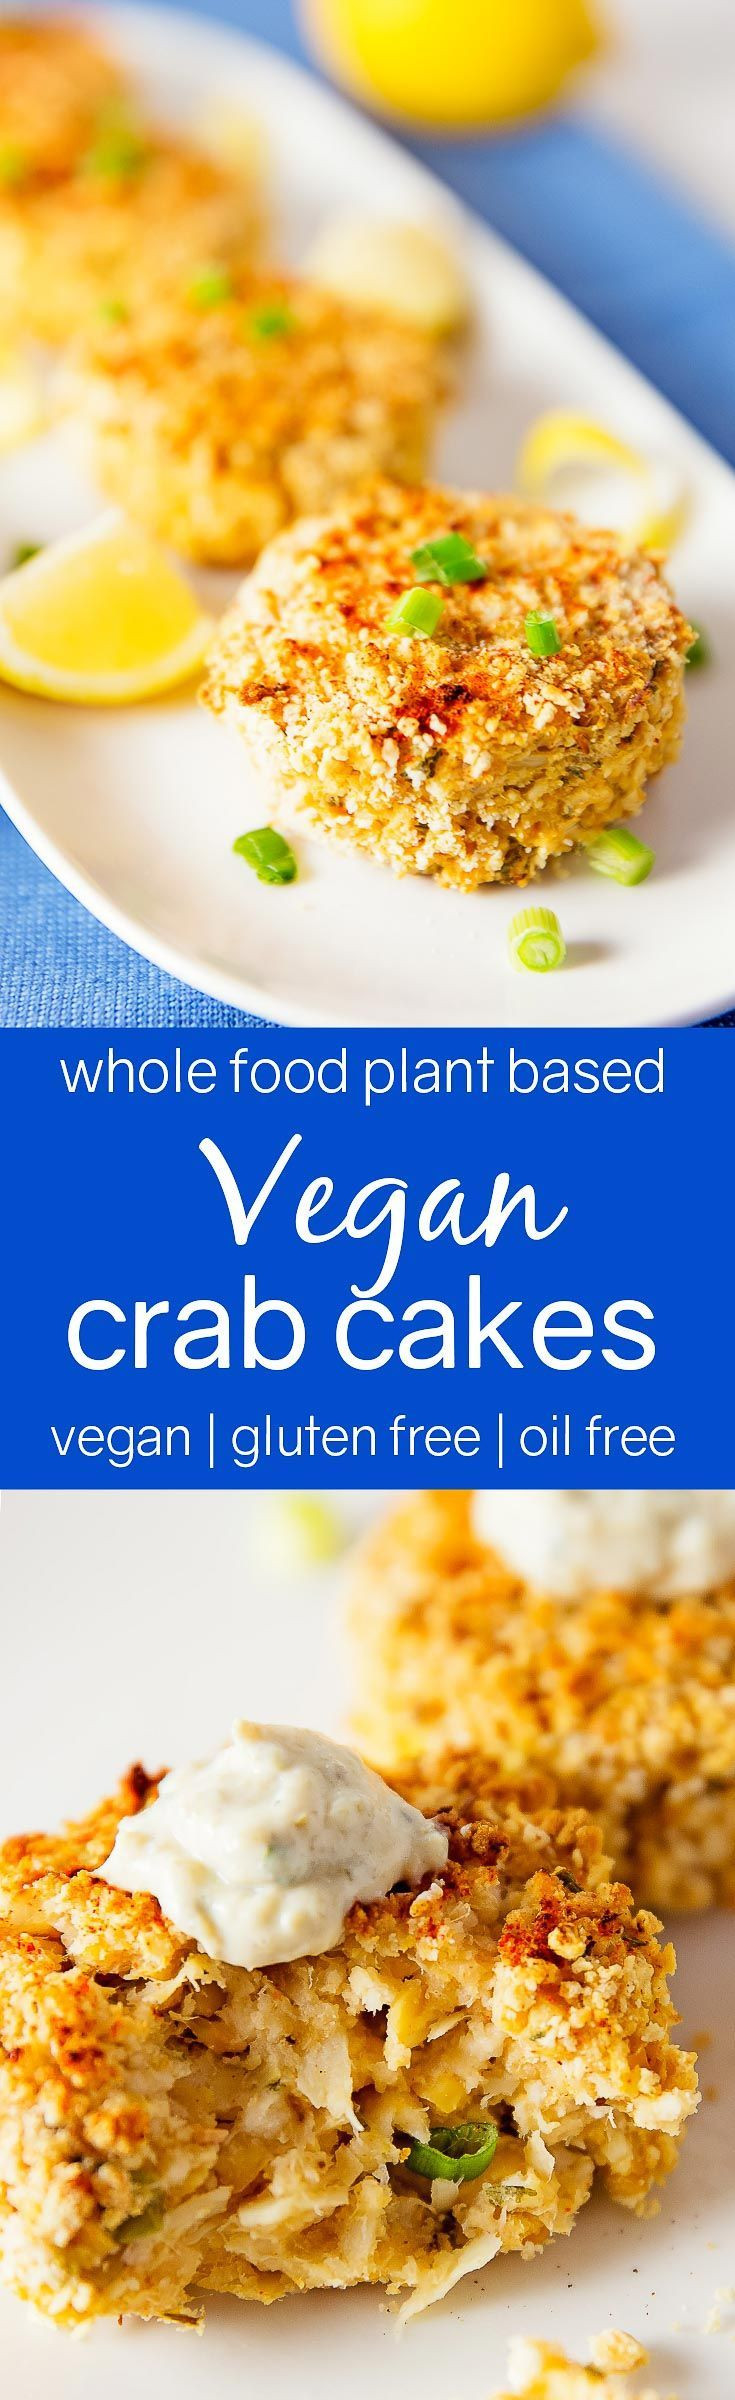 Vegan Crab Cake Recipe
 Vegan "Crab" Cakes Recipe